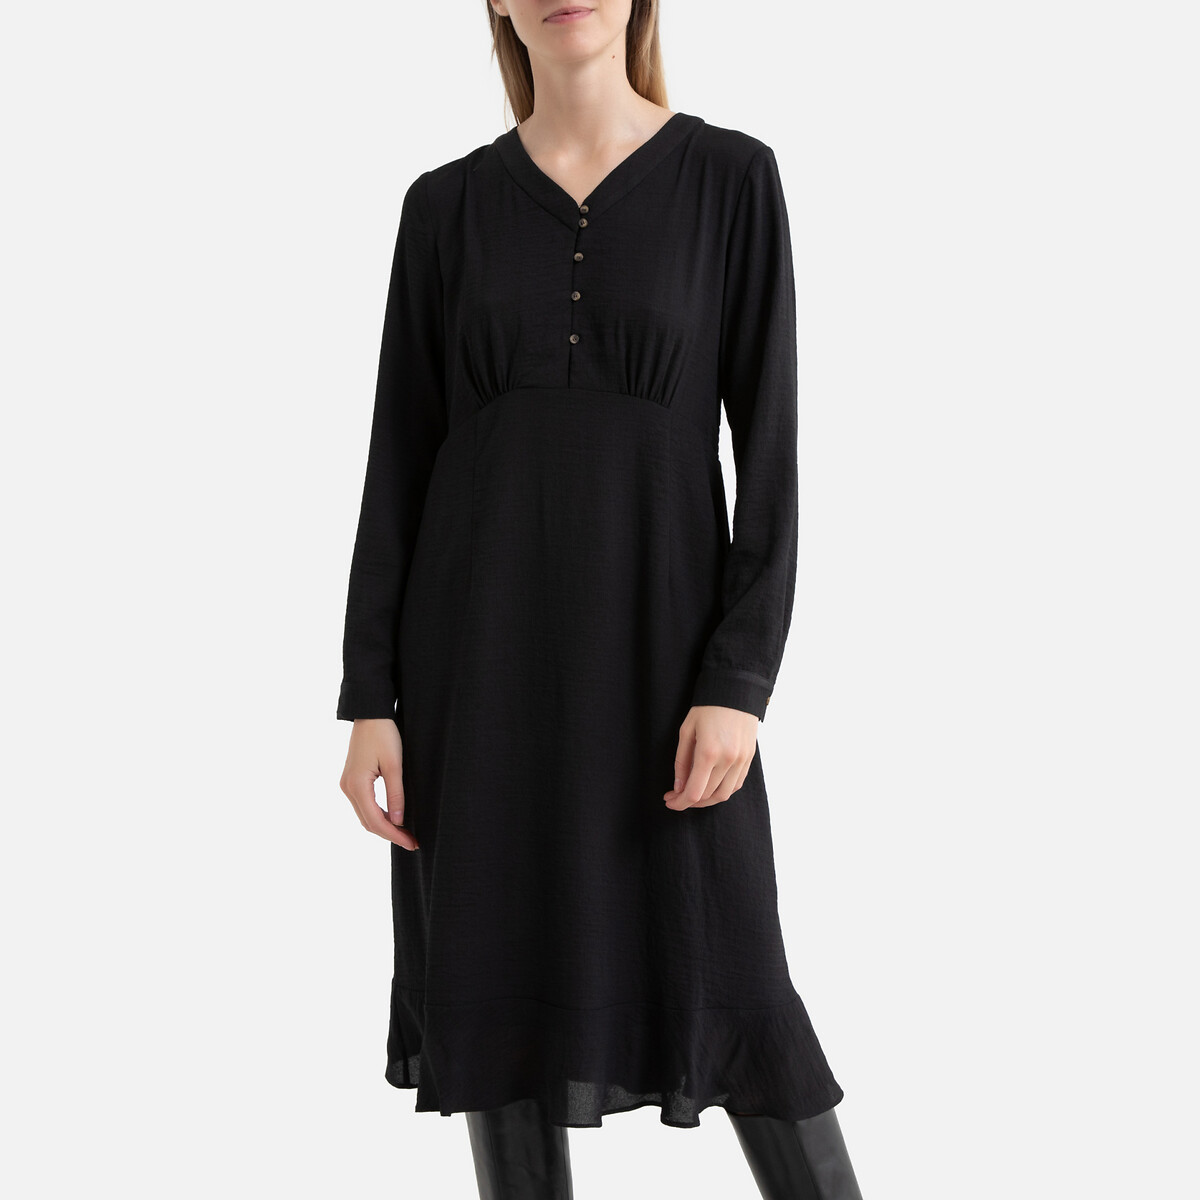 Платье La Redoute Короткое на пуговицах длинные рукава 3(L) черный, размер 3(L) Короткое на пуговицах длинные рукава 3(L) черный - фото 1